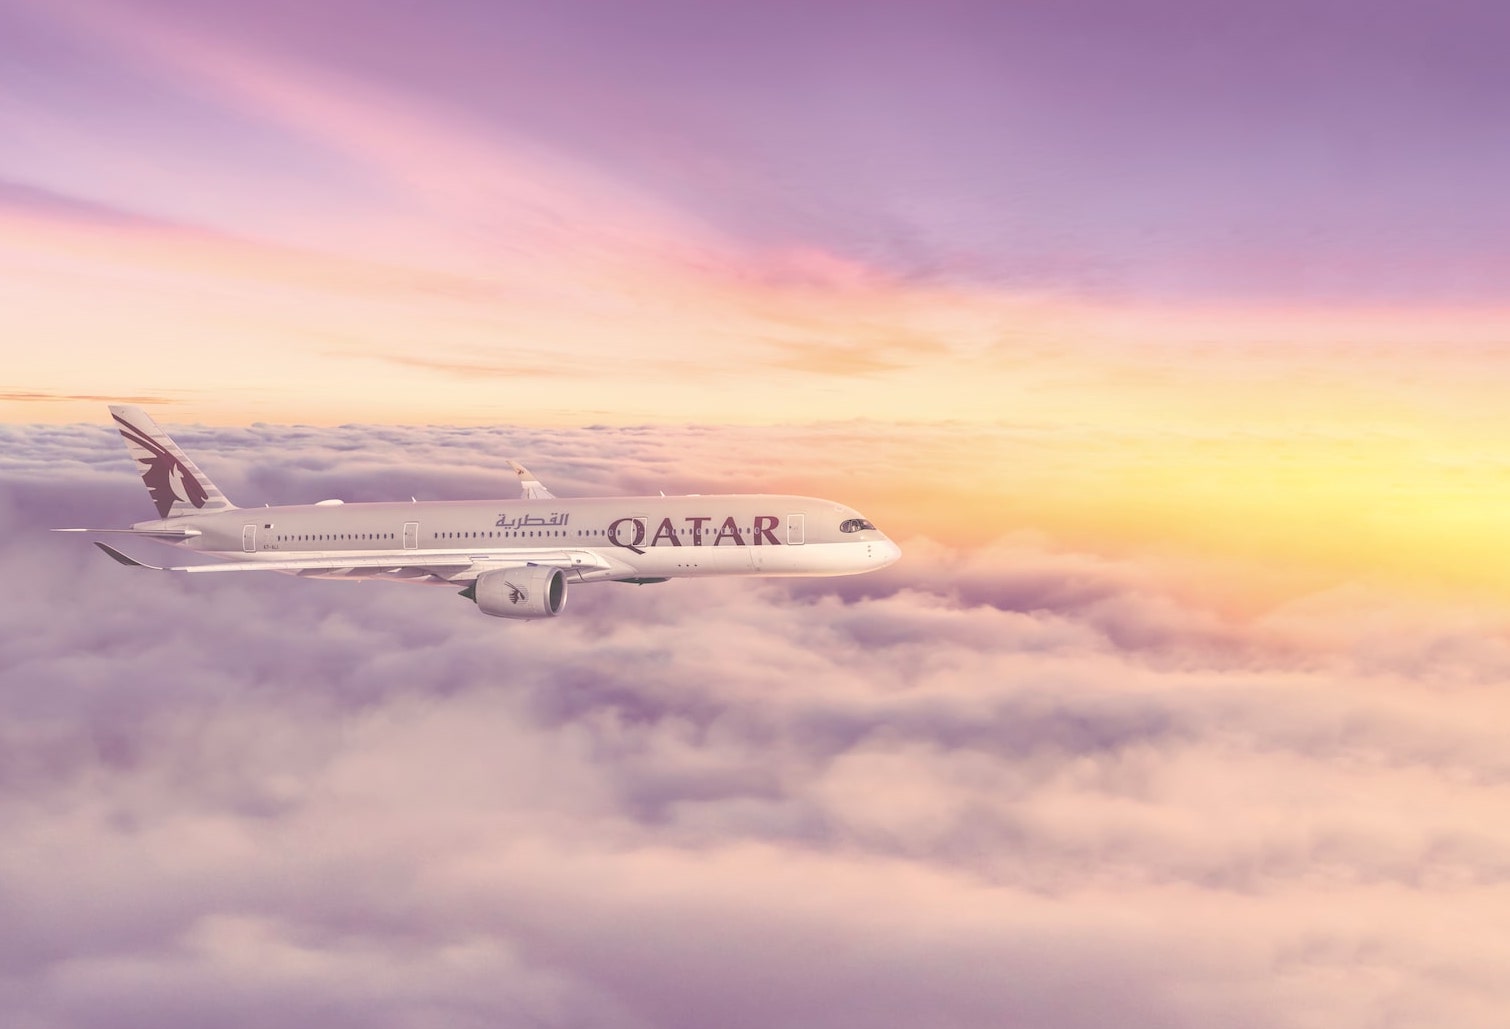 Qatar Airways Image